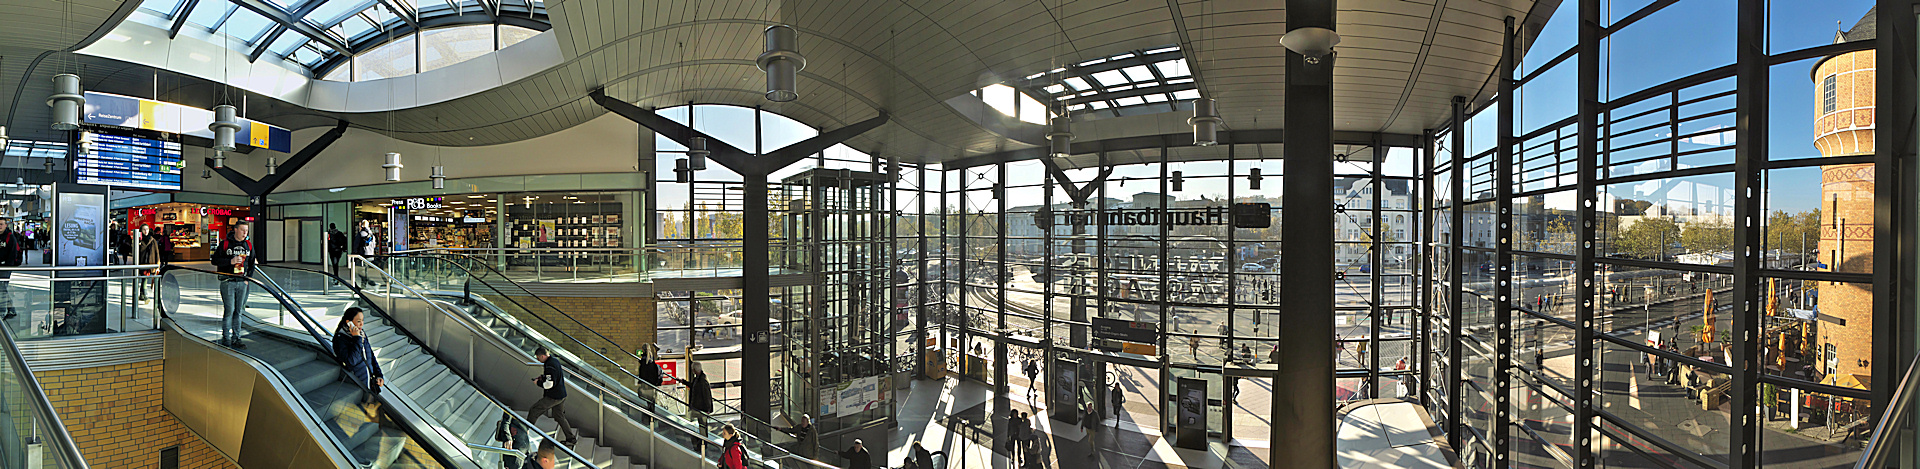 Potsdam_Hauptbahnhof-181106-vk15-014 ...